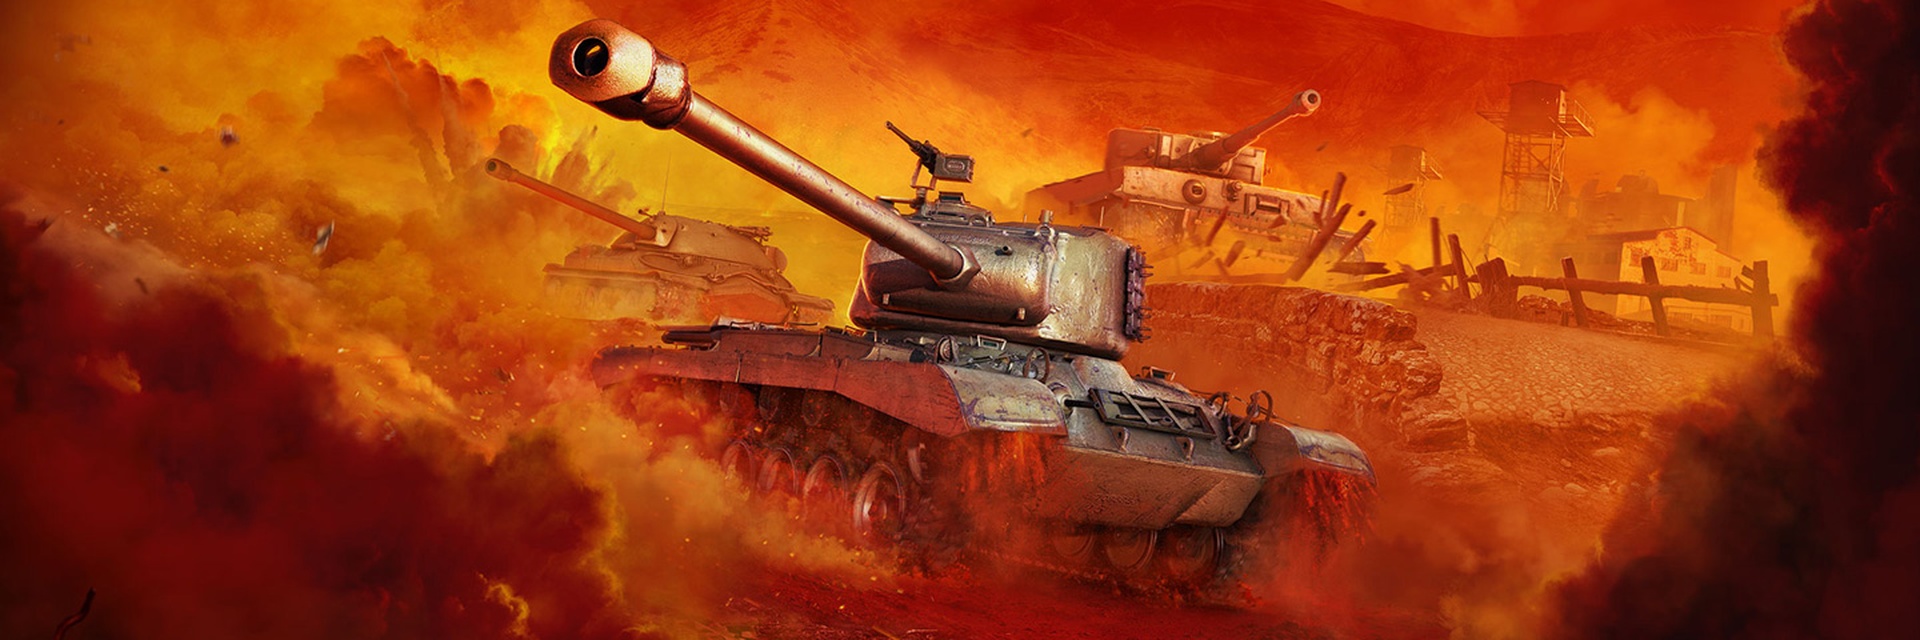 Paranafloden duft Formindske World of Tanks Now Live on PlayStation 4 | General | News | Wargaming